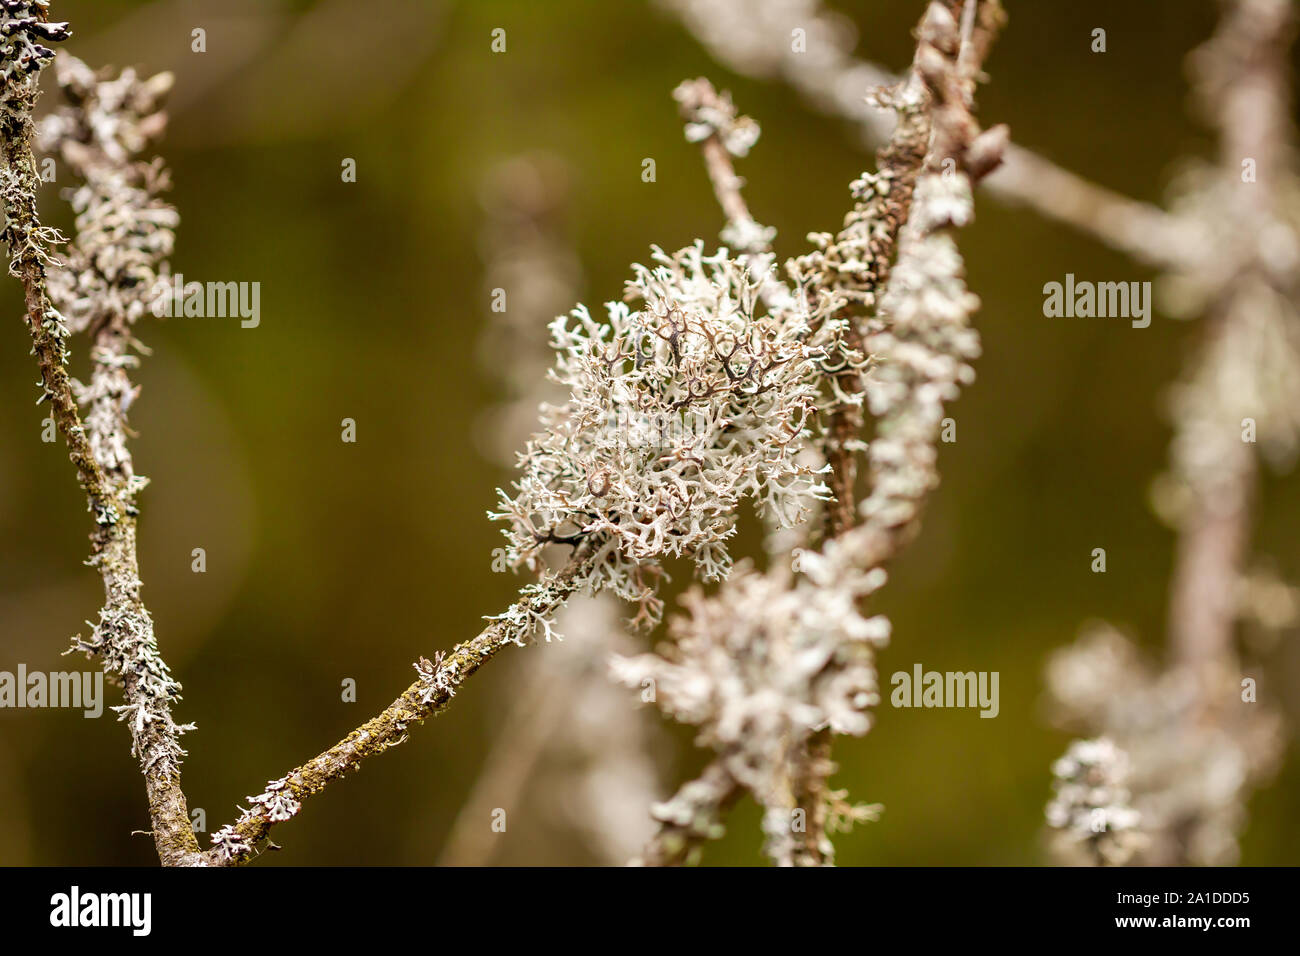 Close up of cladonia tenuis lichen. Location: Denmark. Stock Photo